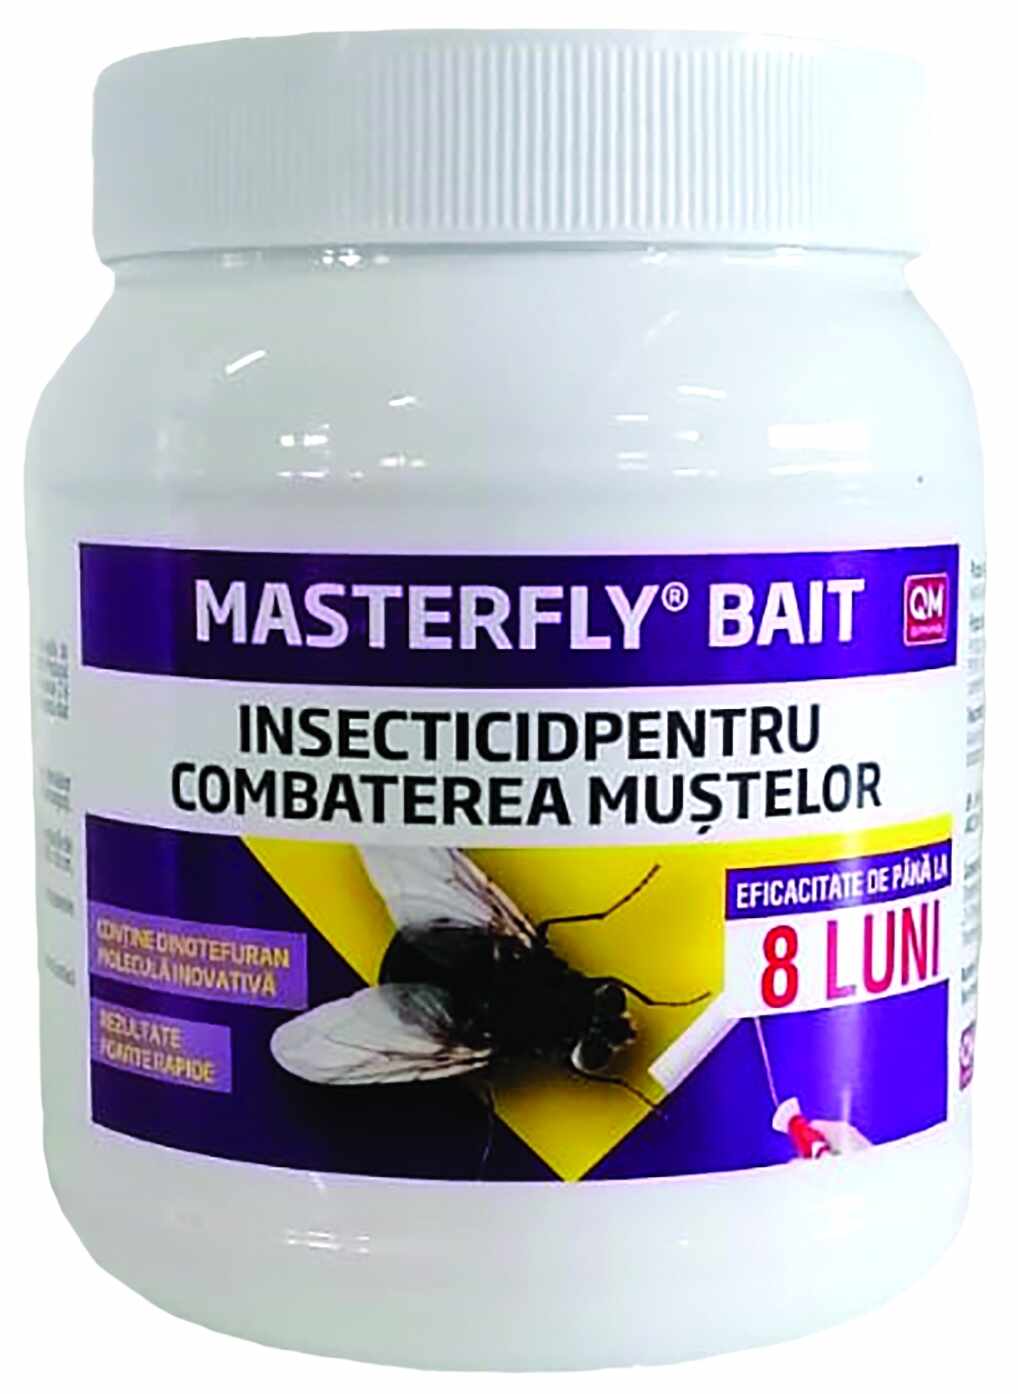 Masterfly Bait 125 g, insecticid pentru combaterea mustelor